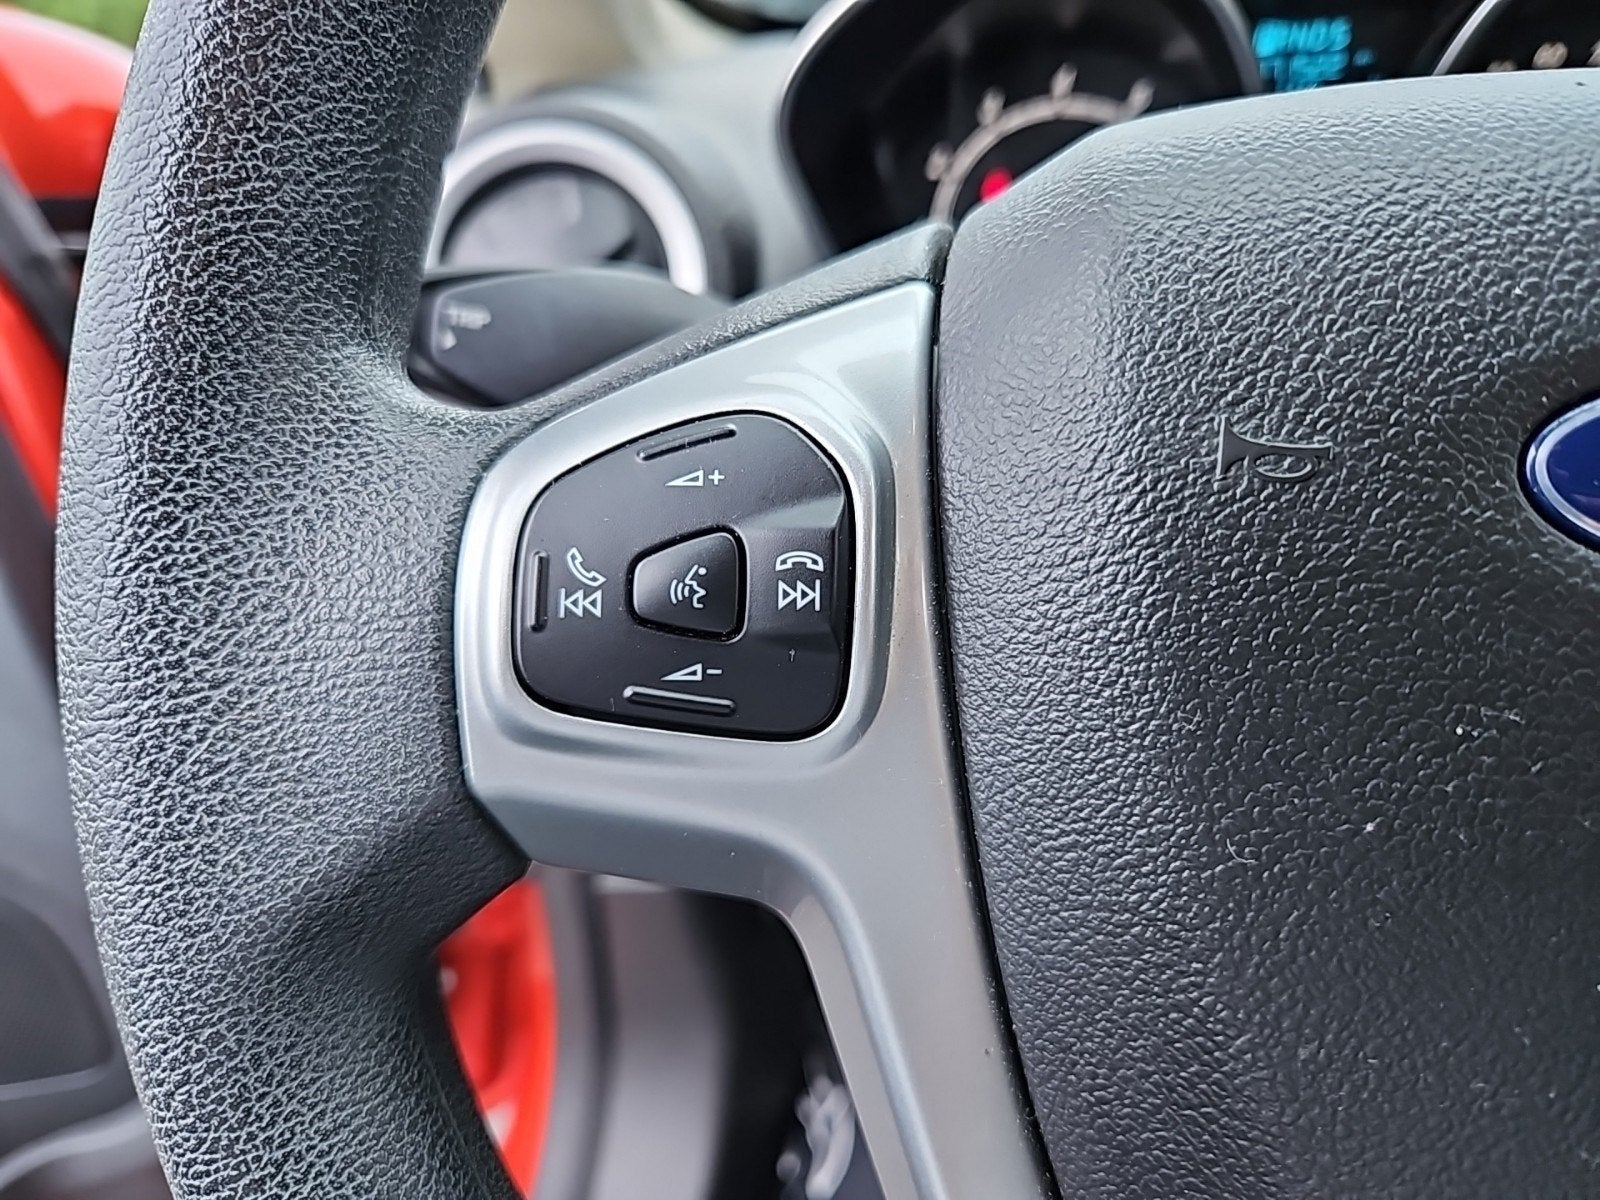 2018 Ford Fiesta SE Hatchback